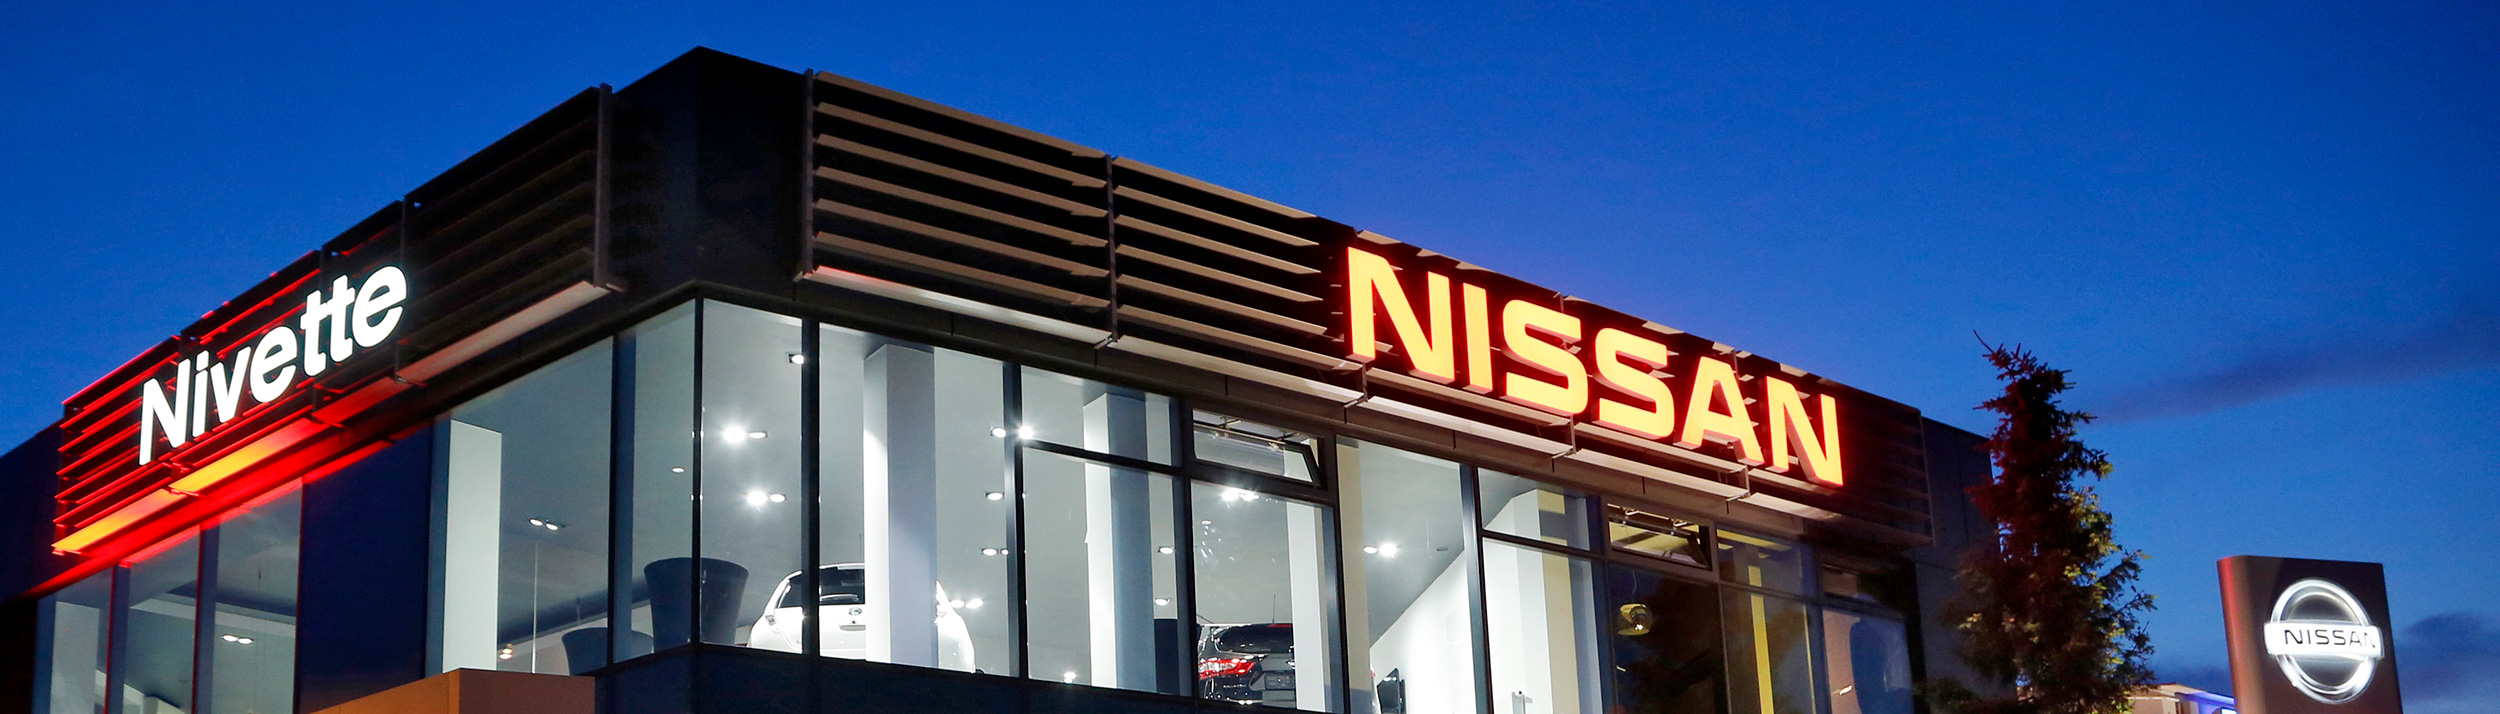 Kontakt Nivette Twój Dealer Nissan na Pradze Południe